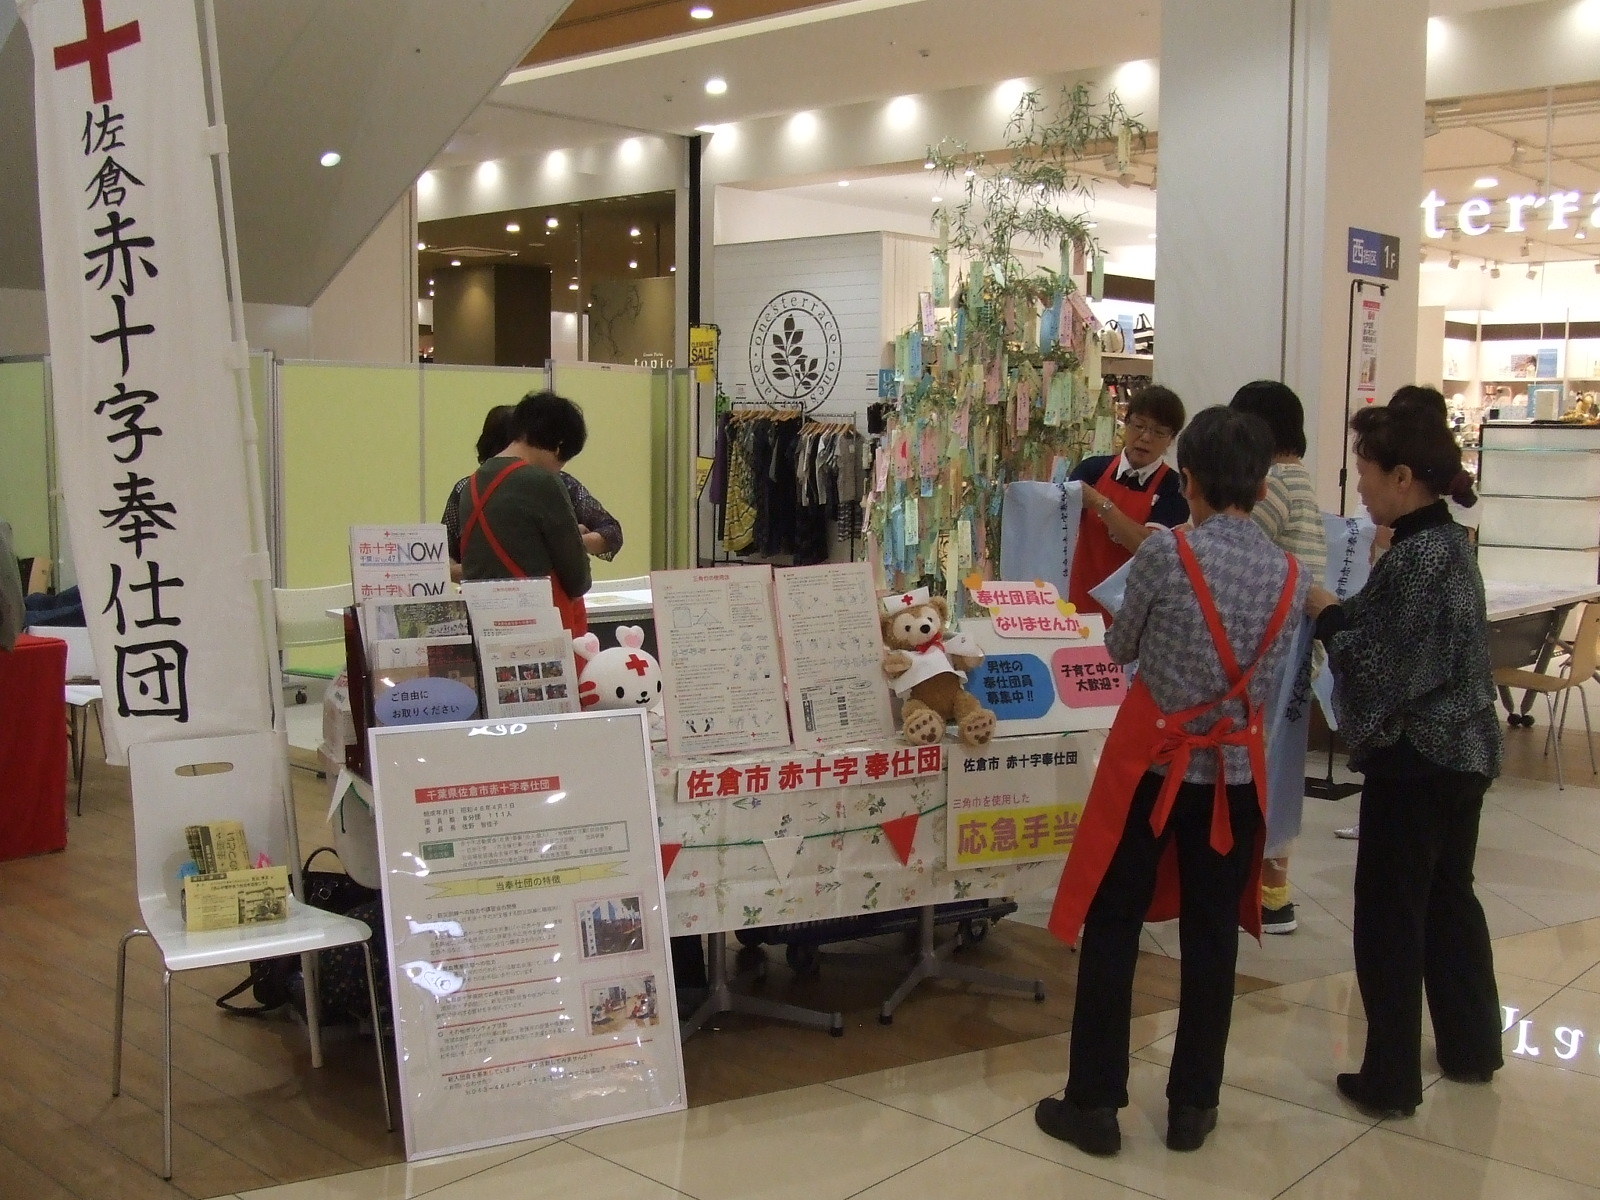 「佐倉赤十字奉仕団」と書かれたのぼりと、展示物などが置かれたブースの周りに人が数人集まっている写真